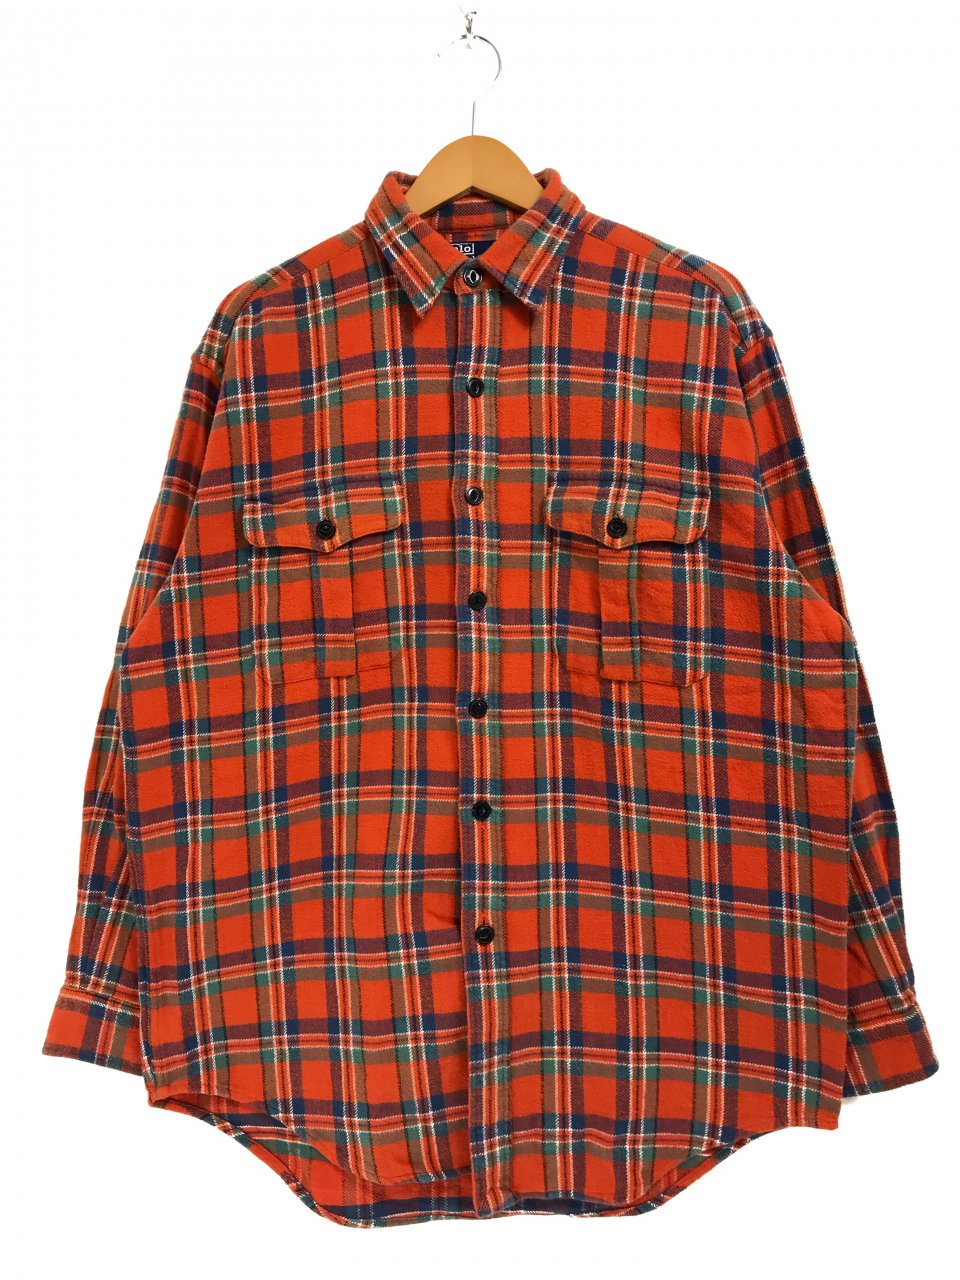 Polo Ralph Lauren Check Flannel L/S Shirt オレンジ M ポロ ラルフ